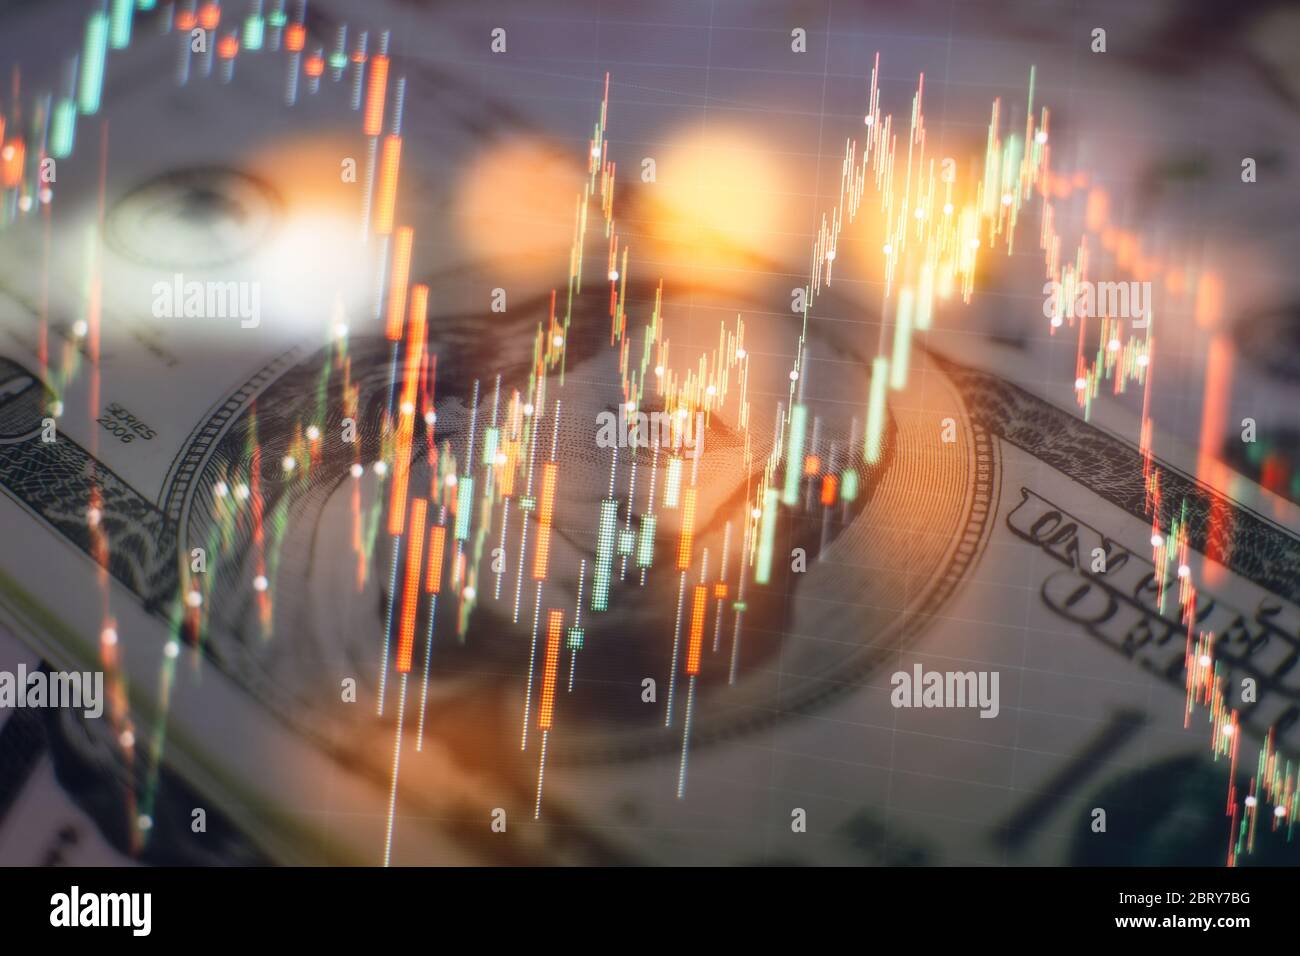 Graphique économique avec des diagrammes sur le marché boursier, pour les entreprises et les concepts financiers et rapports. Banque D'Images